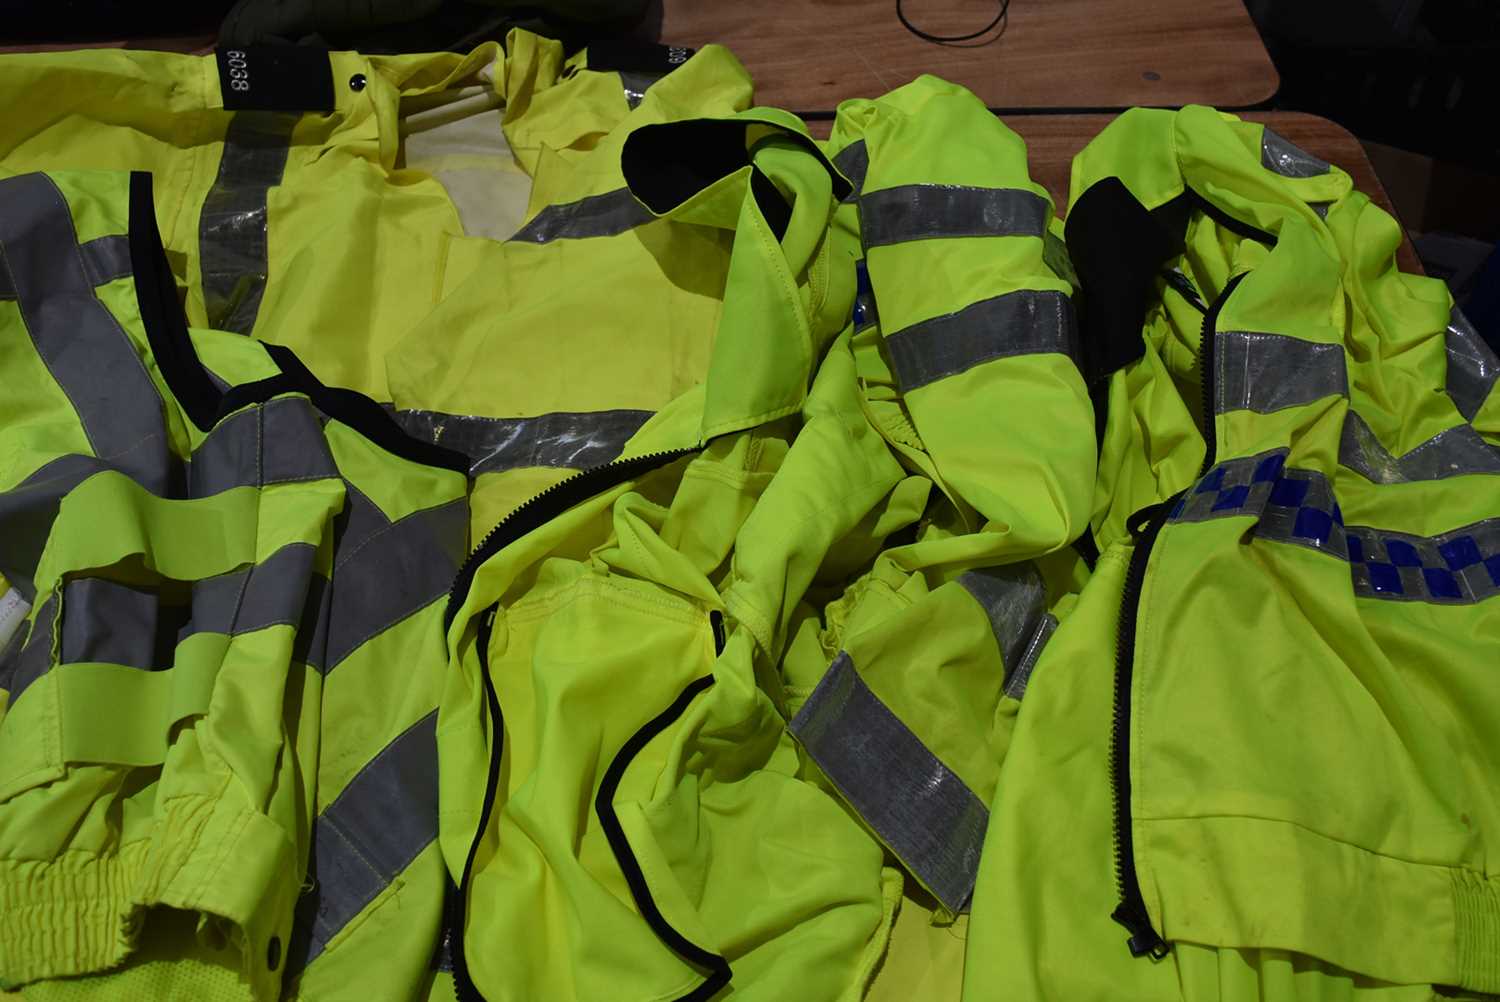 Lot 374 - An assortment of Police High-Viz jackets